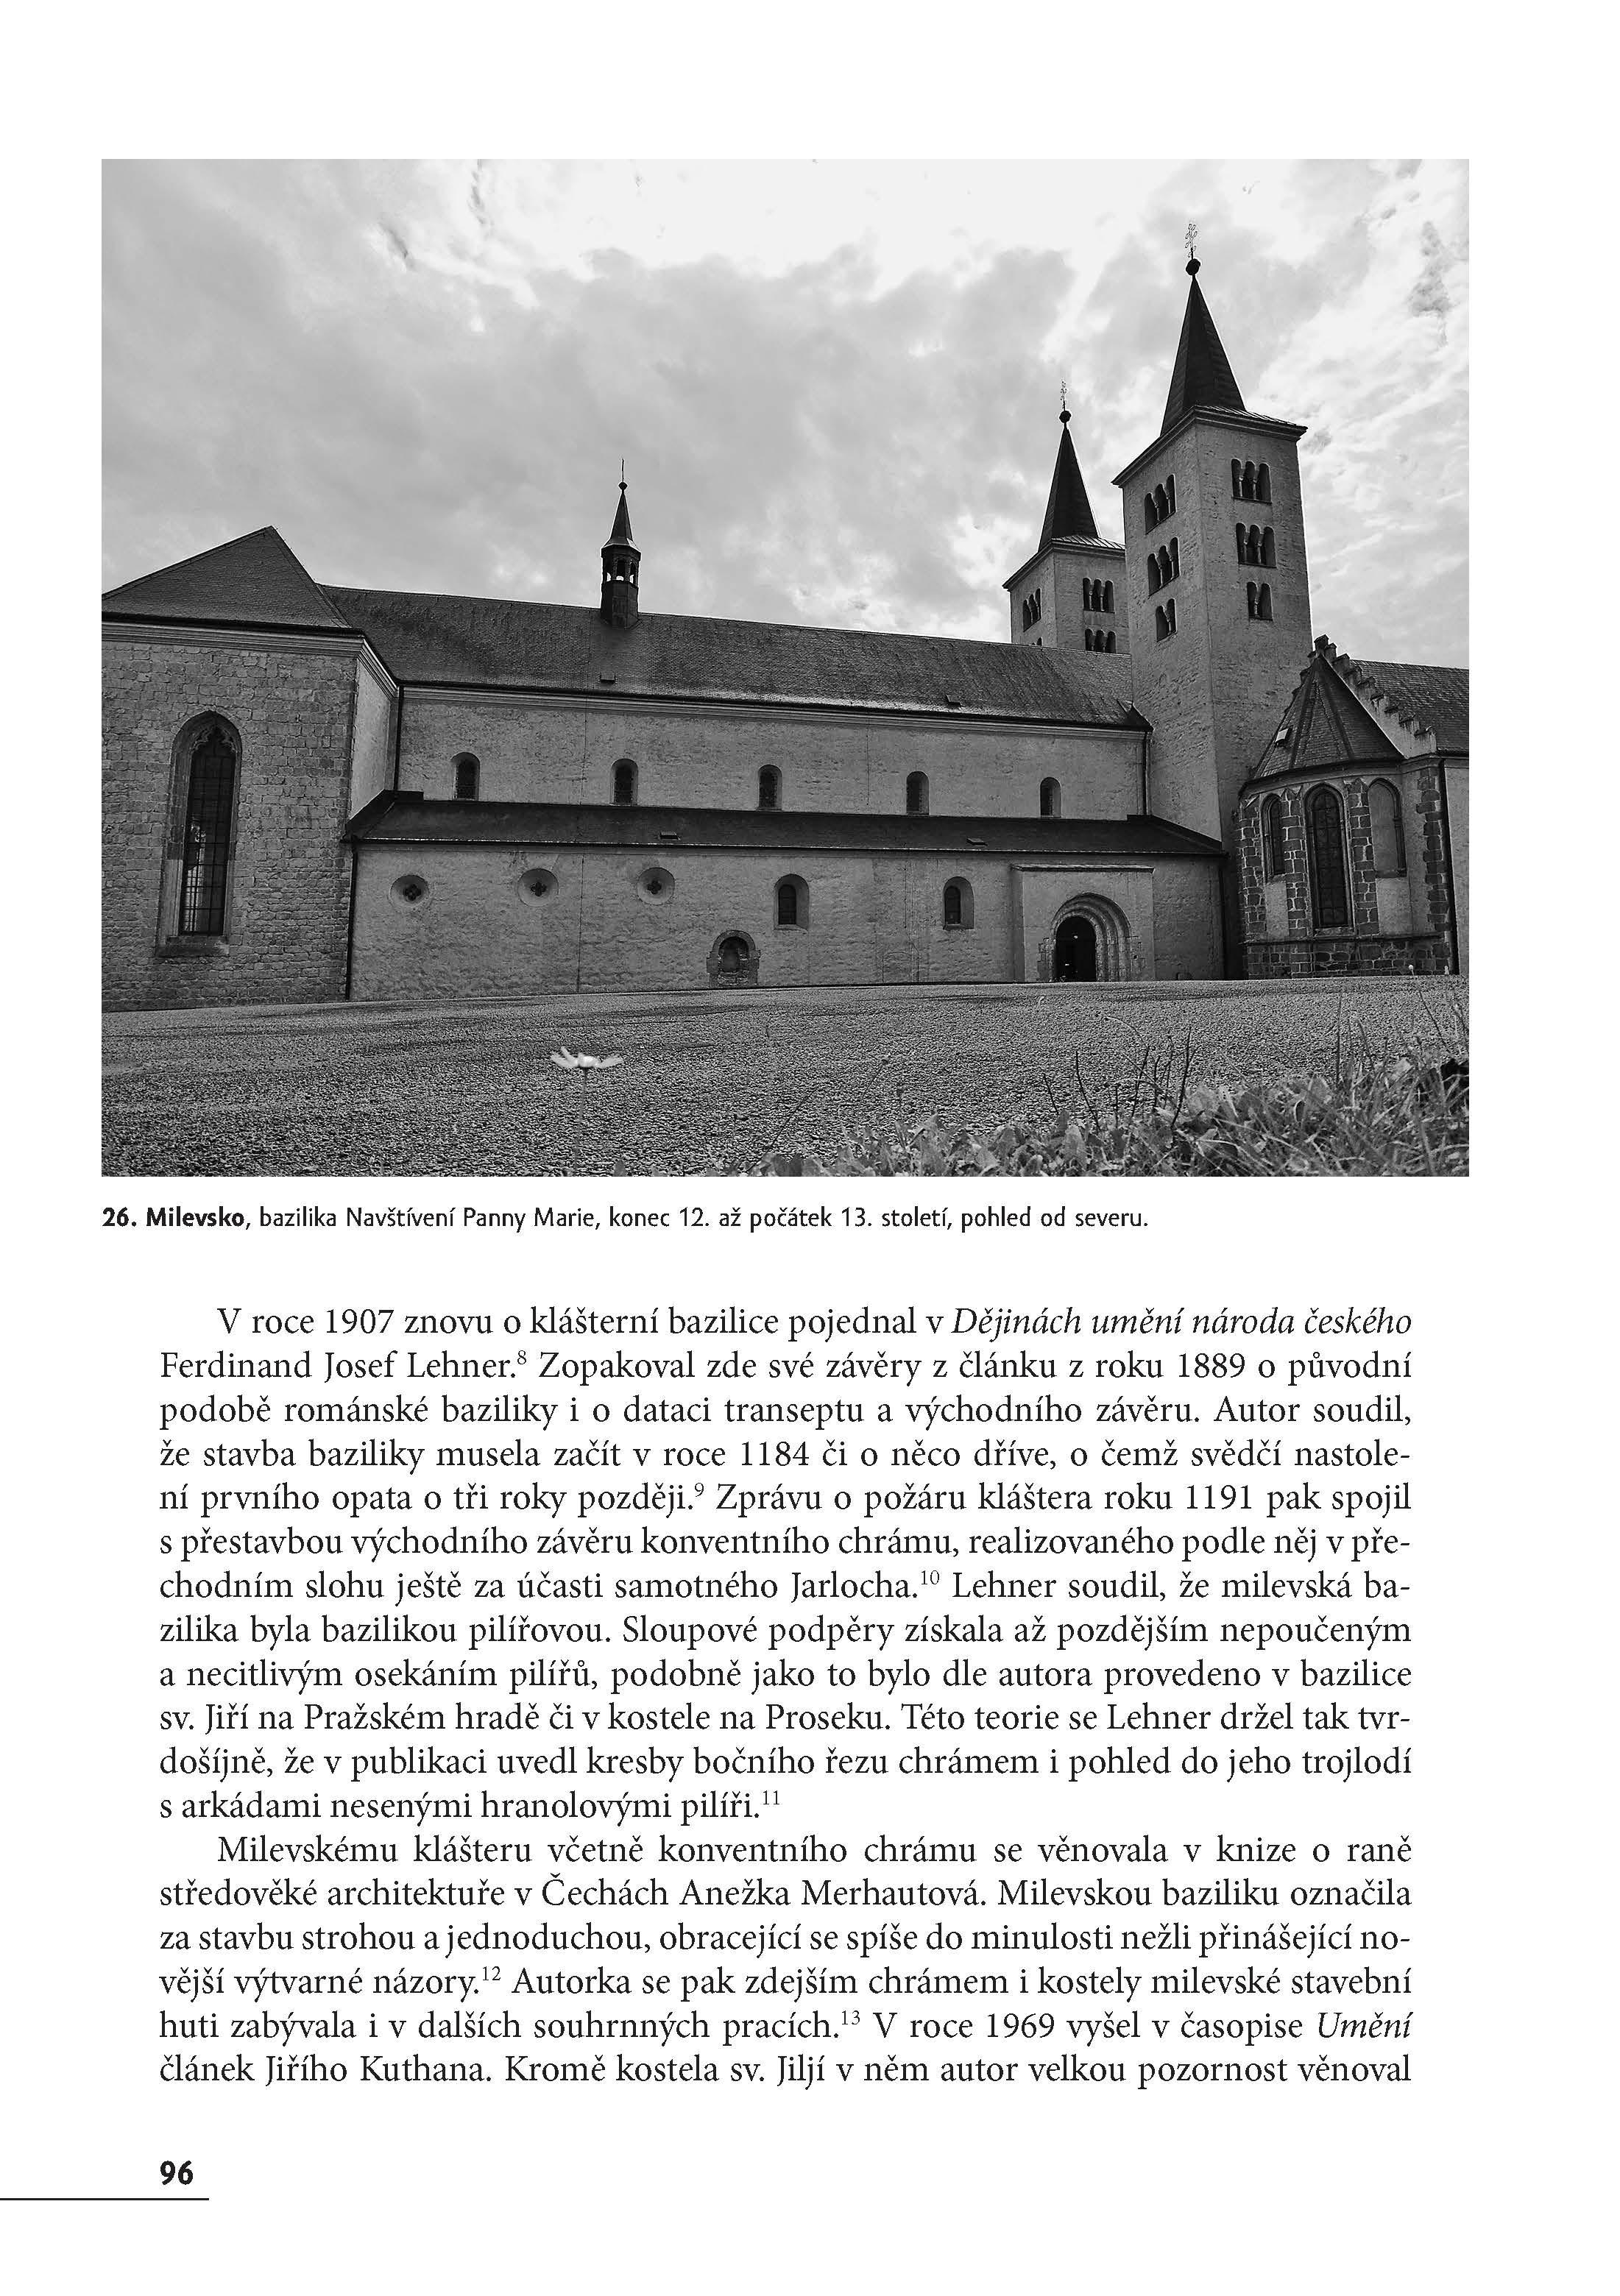 Premonstrátský klášter a kostel sv. Jiljí v Milevsku ukázka-10